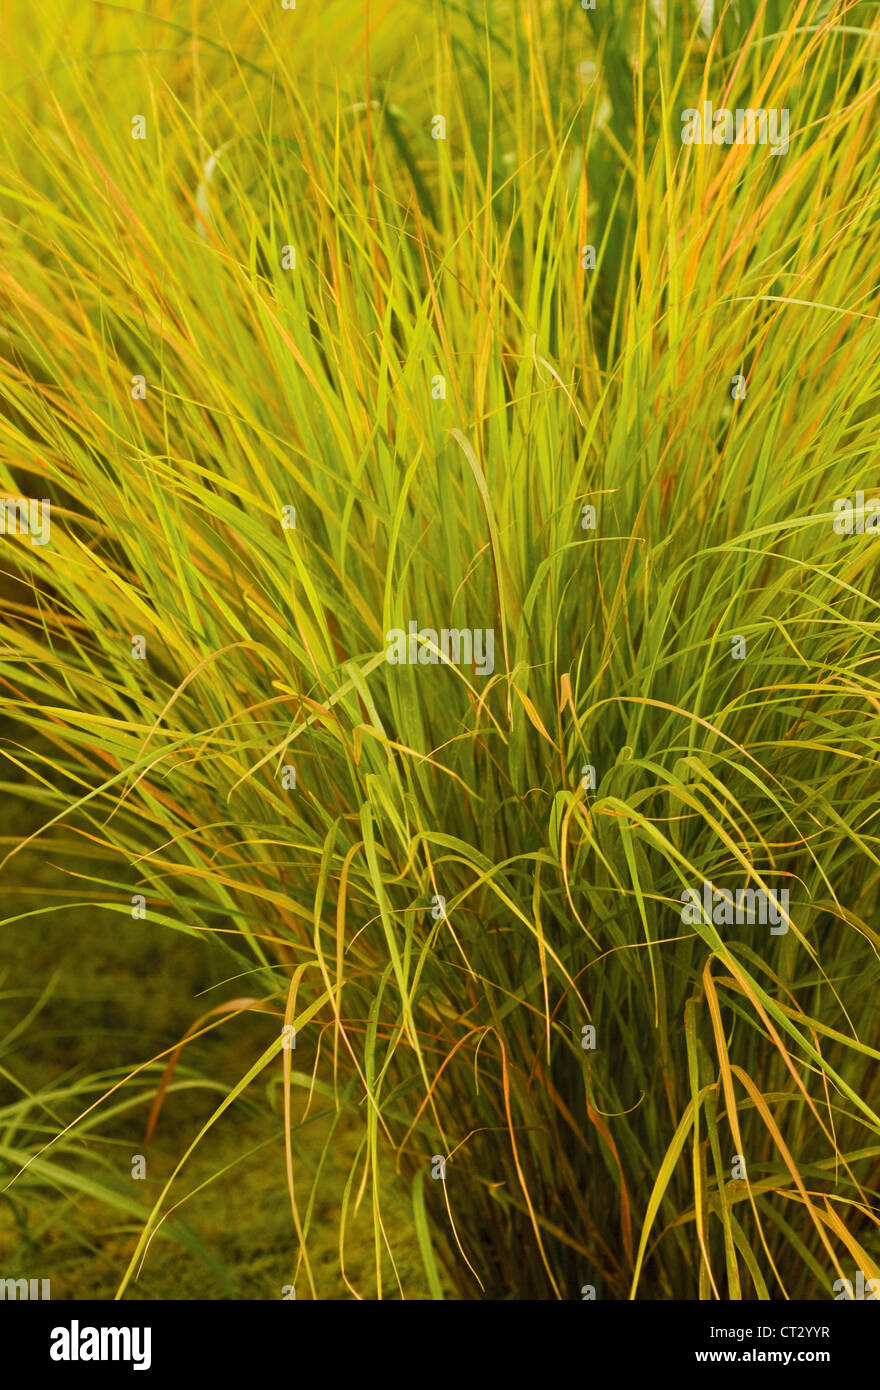 Stipa arundinacea 'Autumn tints', Pheasant tail grass Stock Photo